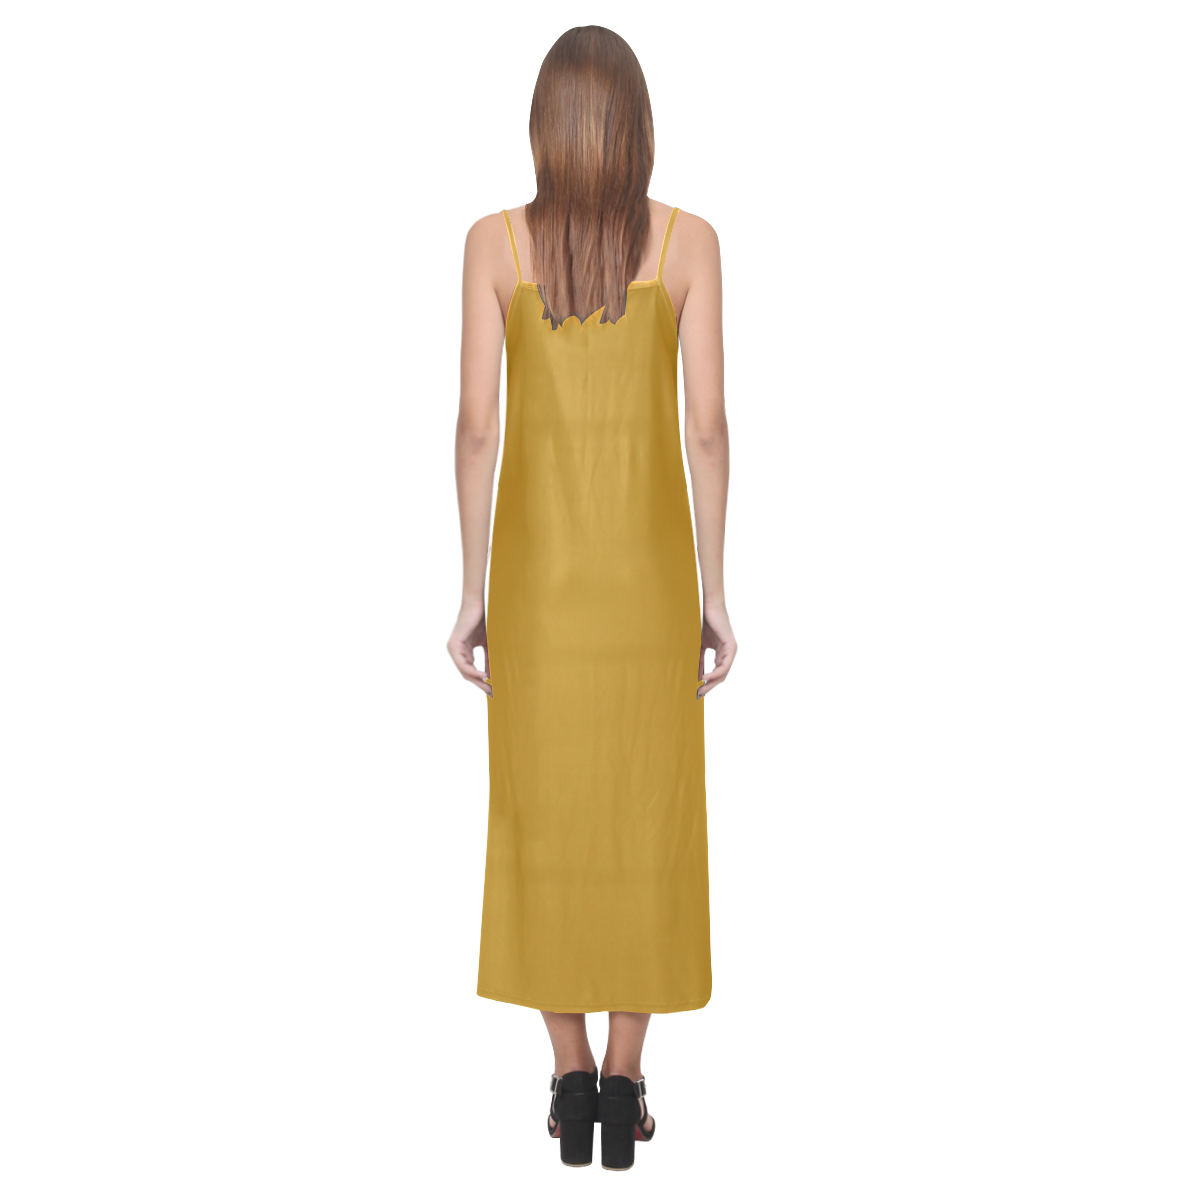 Pirate Gold V-Neck Open Fork Long Dress(Model D18)